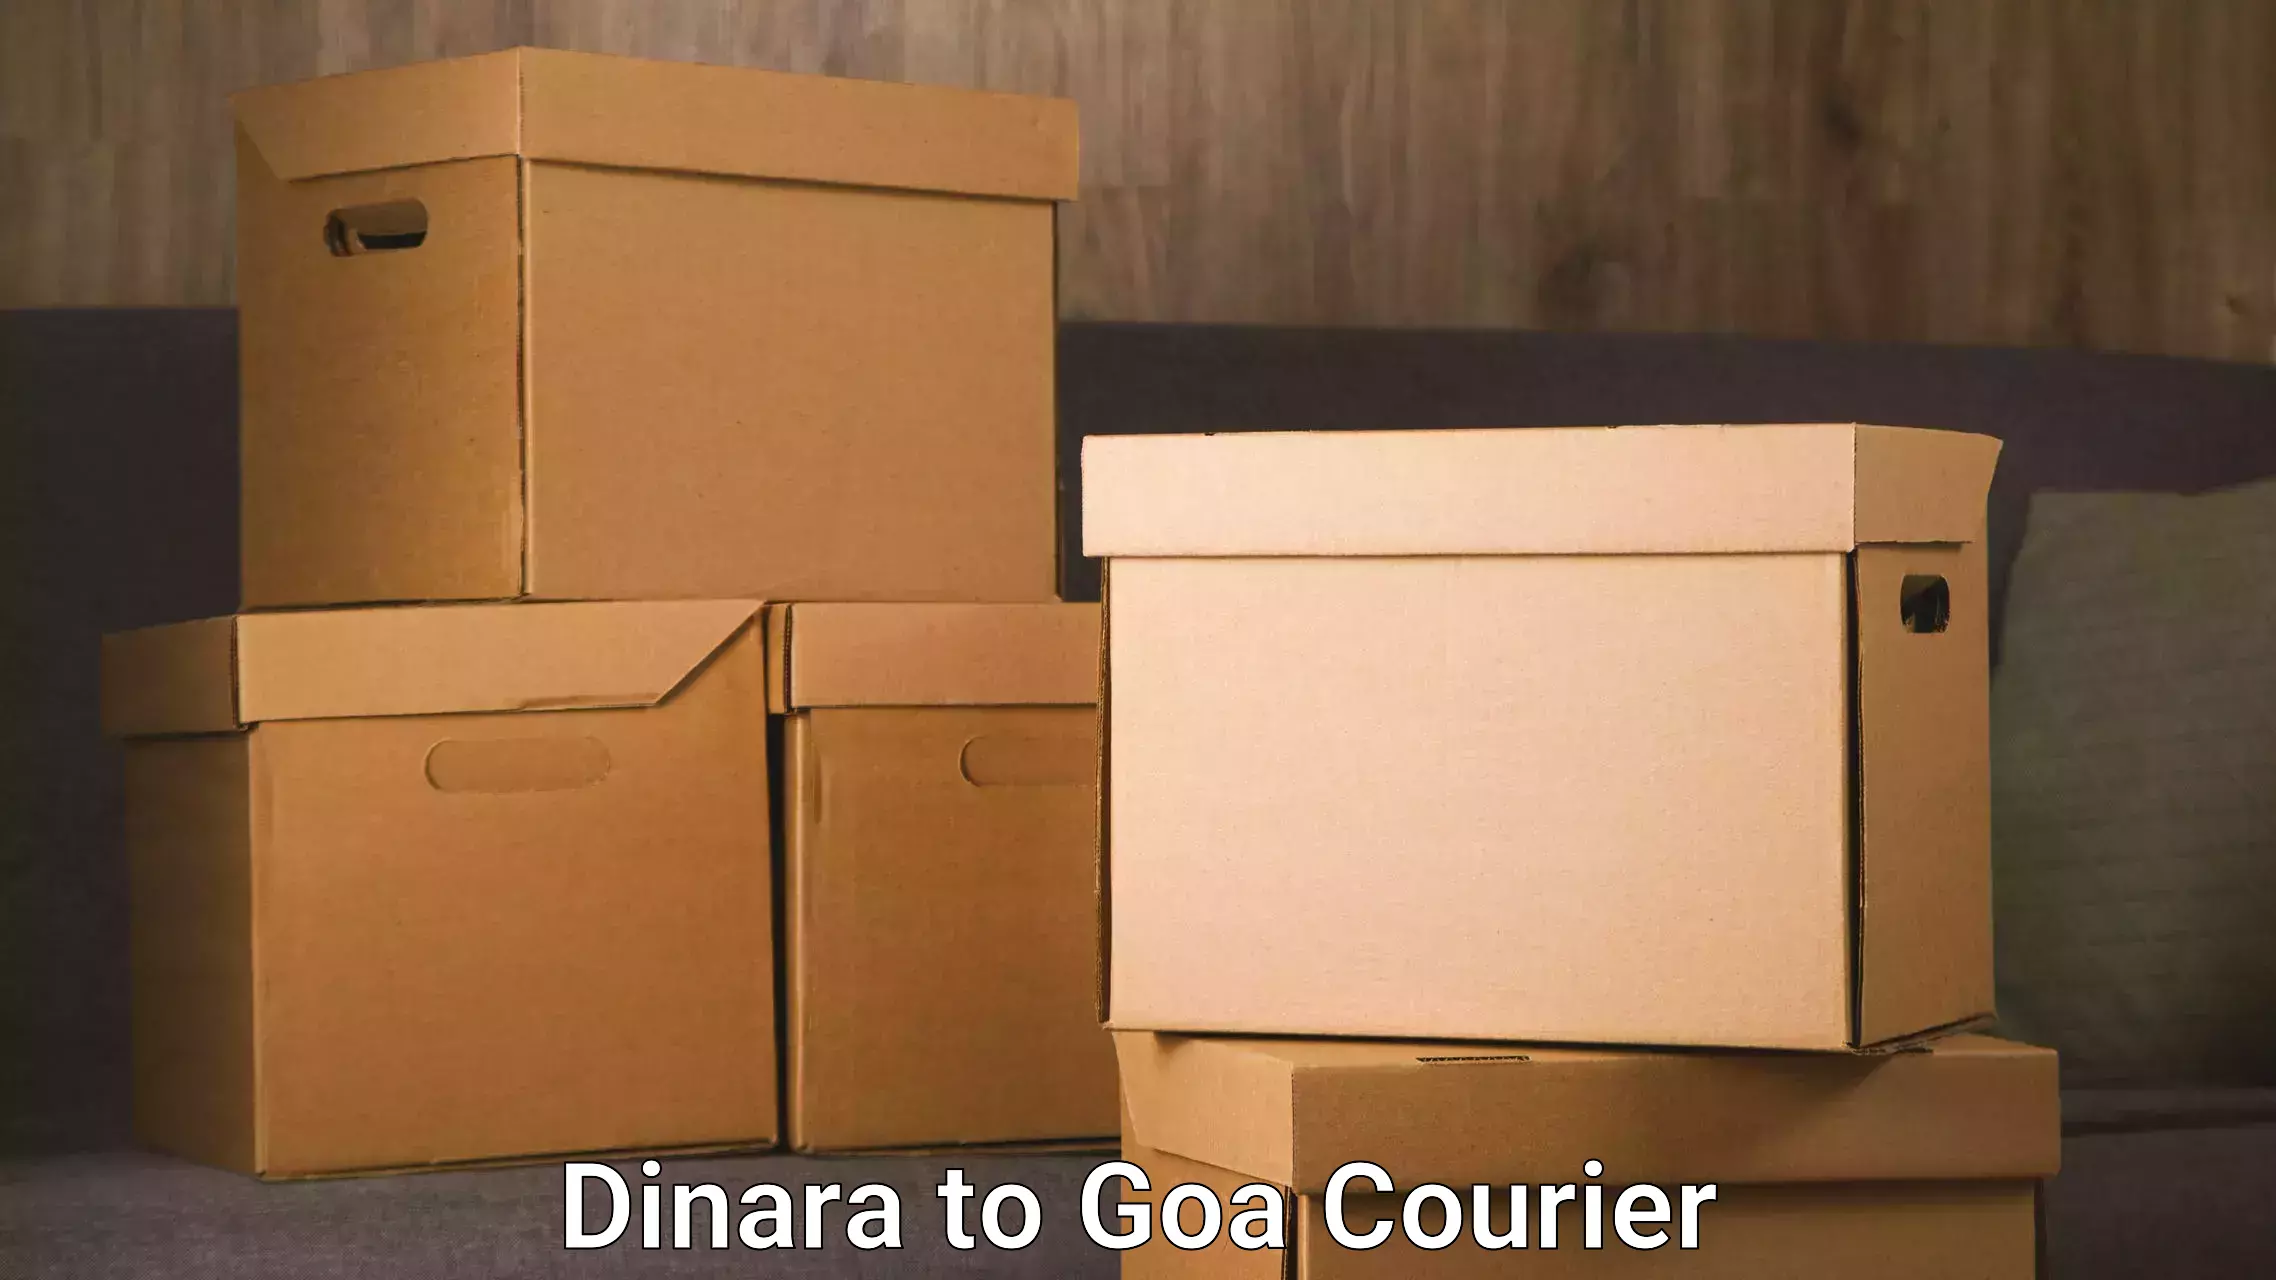 Furniture moving plans Dinara to Ponda